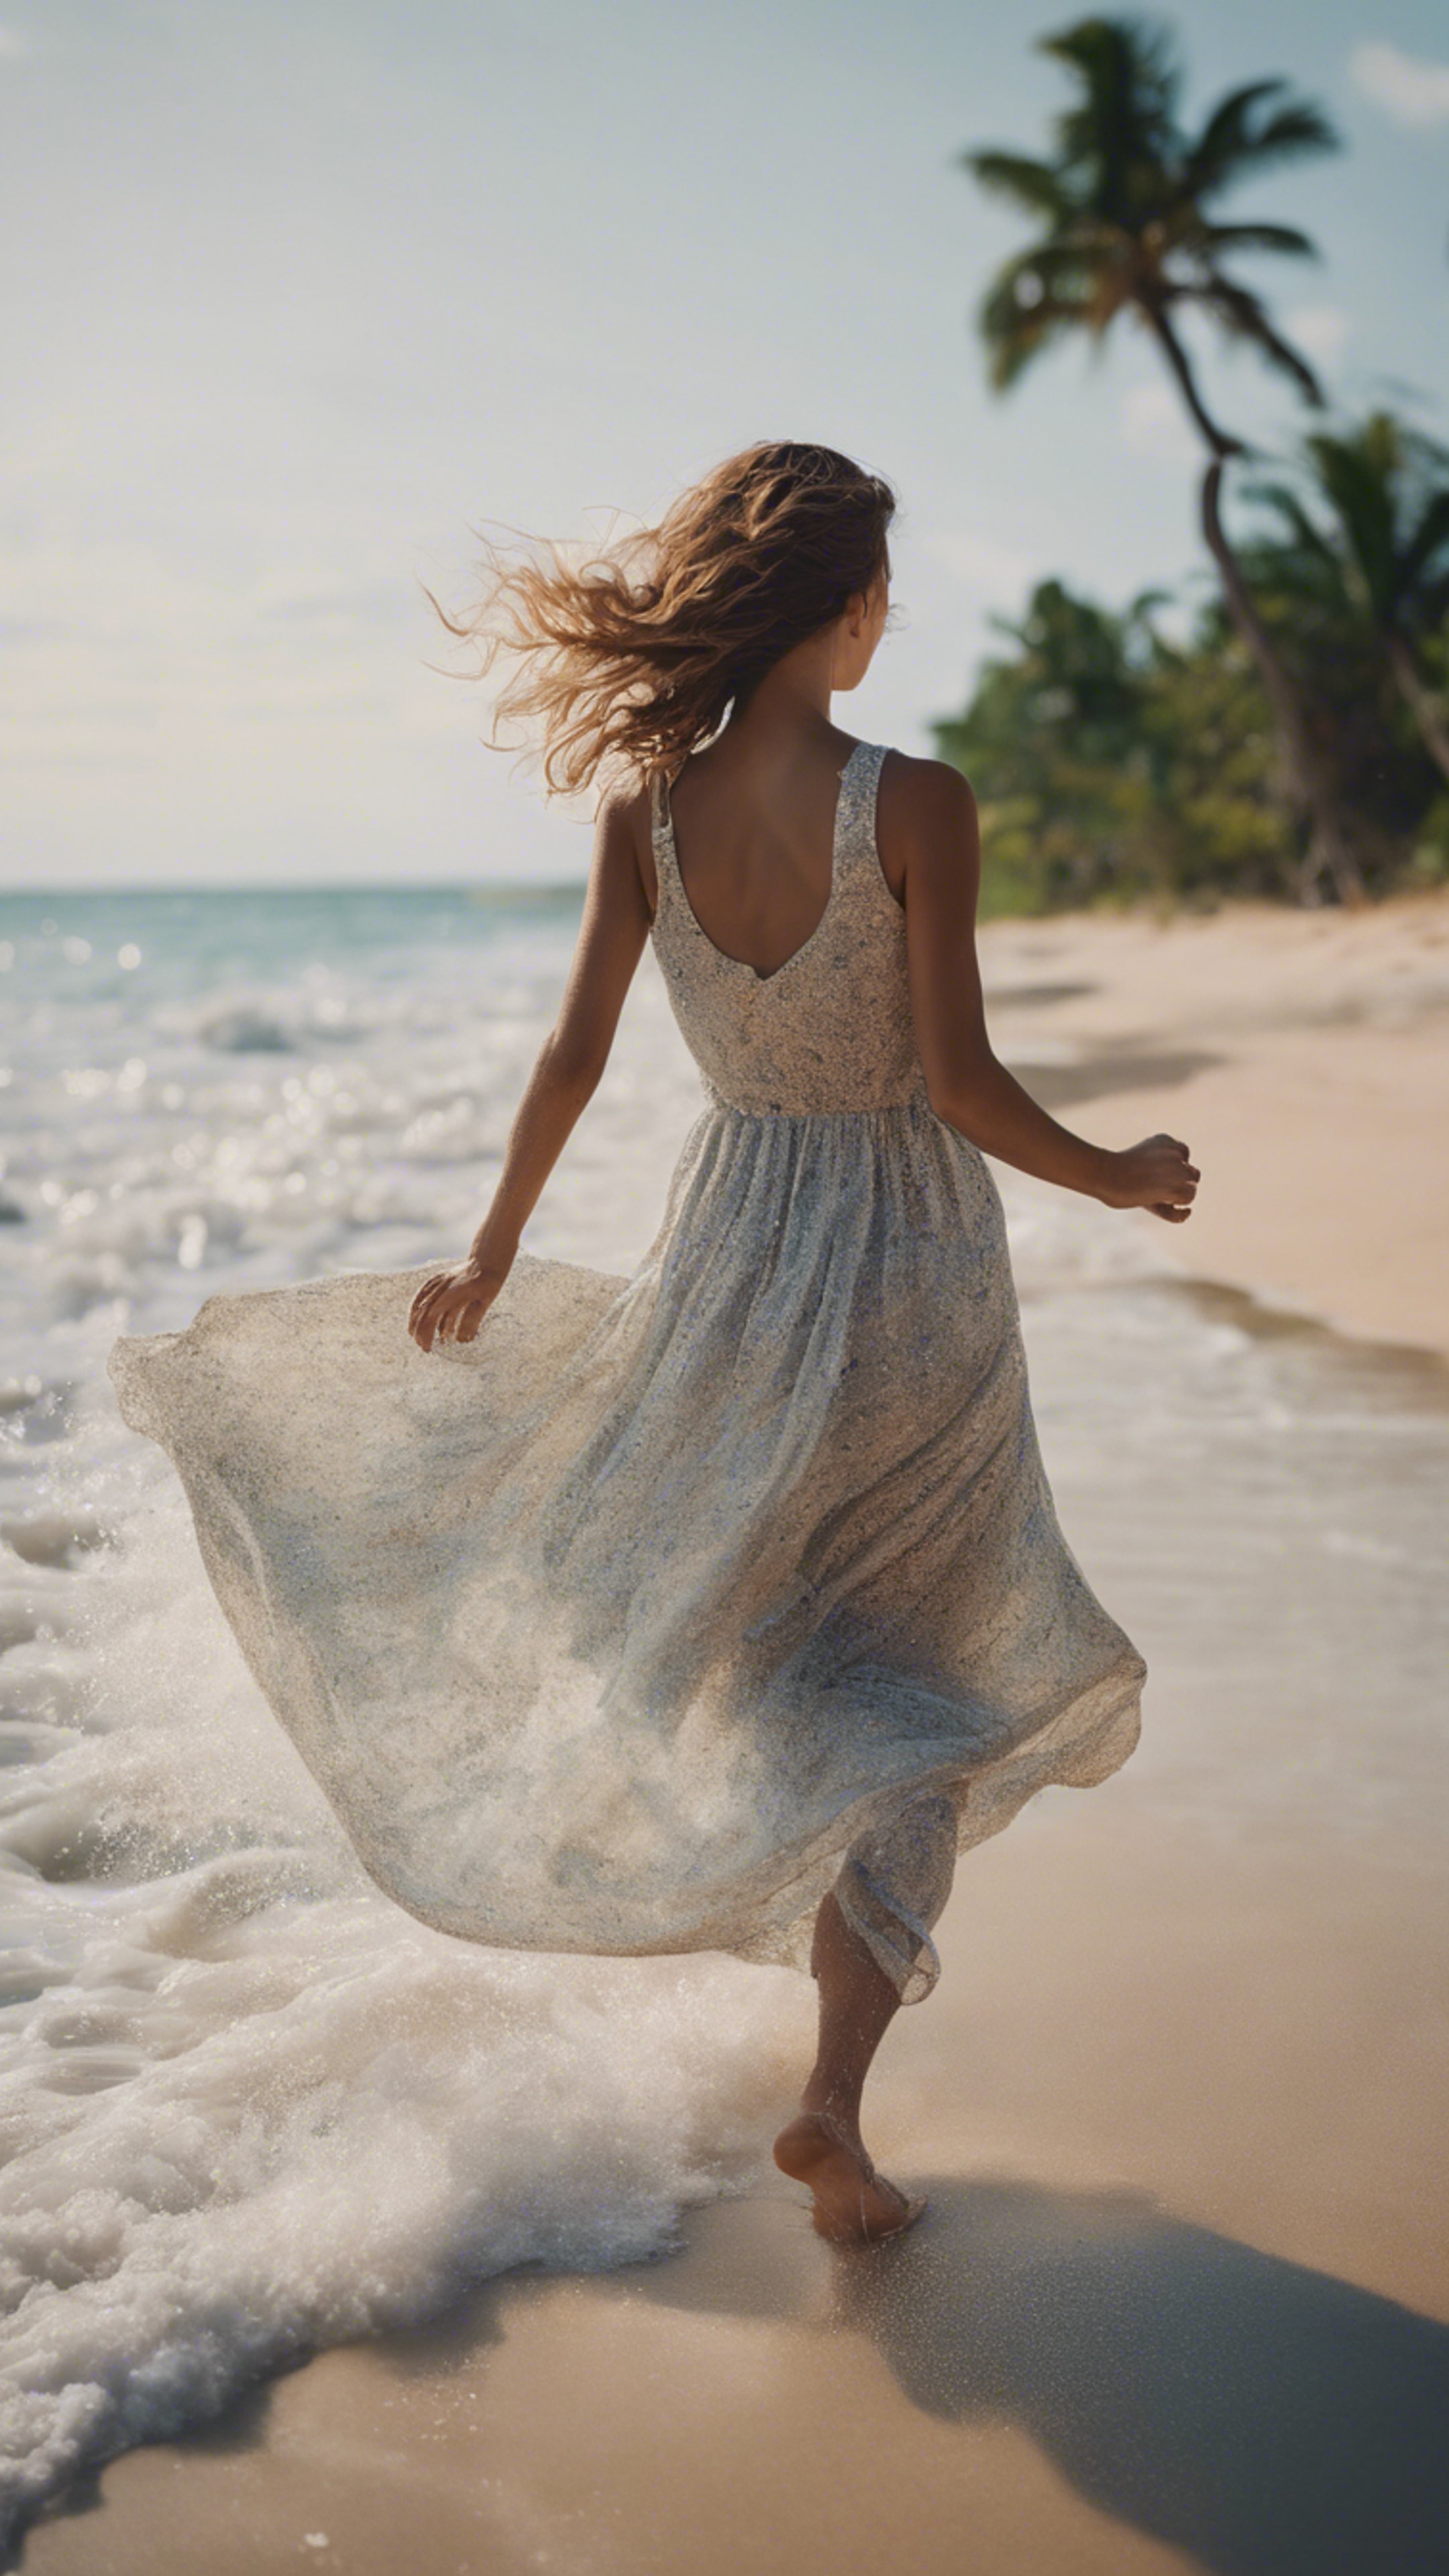 A girl in a flowy dress running alongside the sea at a tropical beach. Wallpaper[6de970100921406193d7]